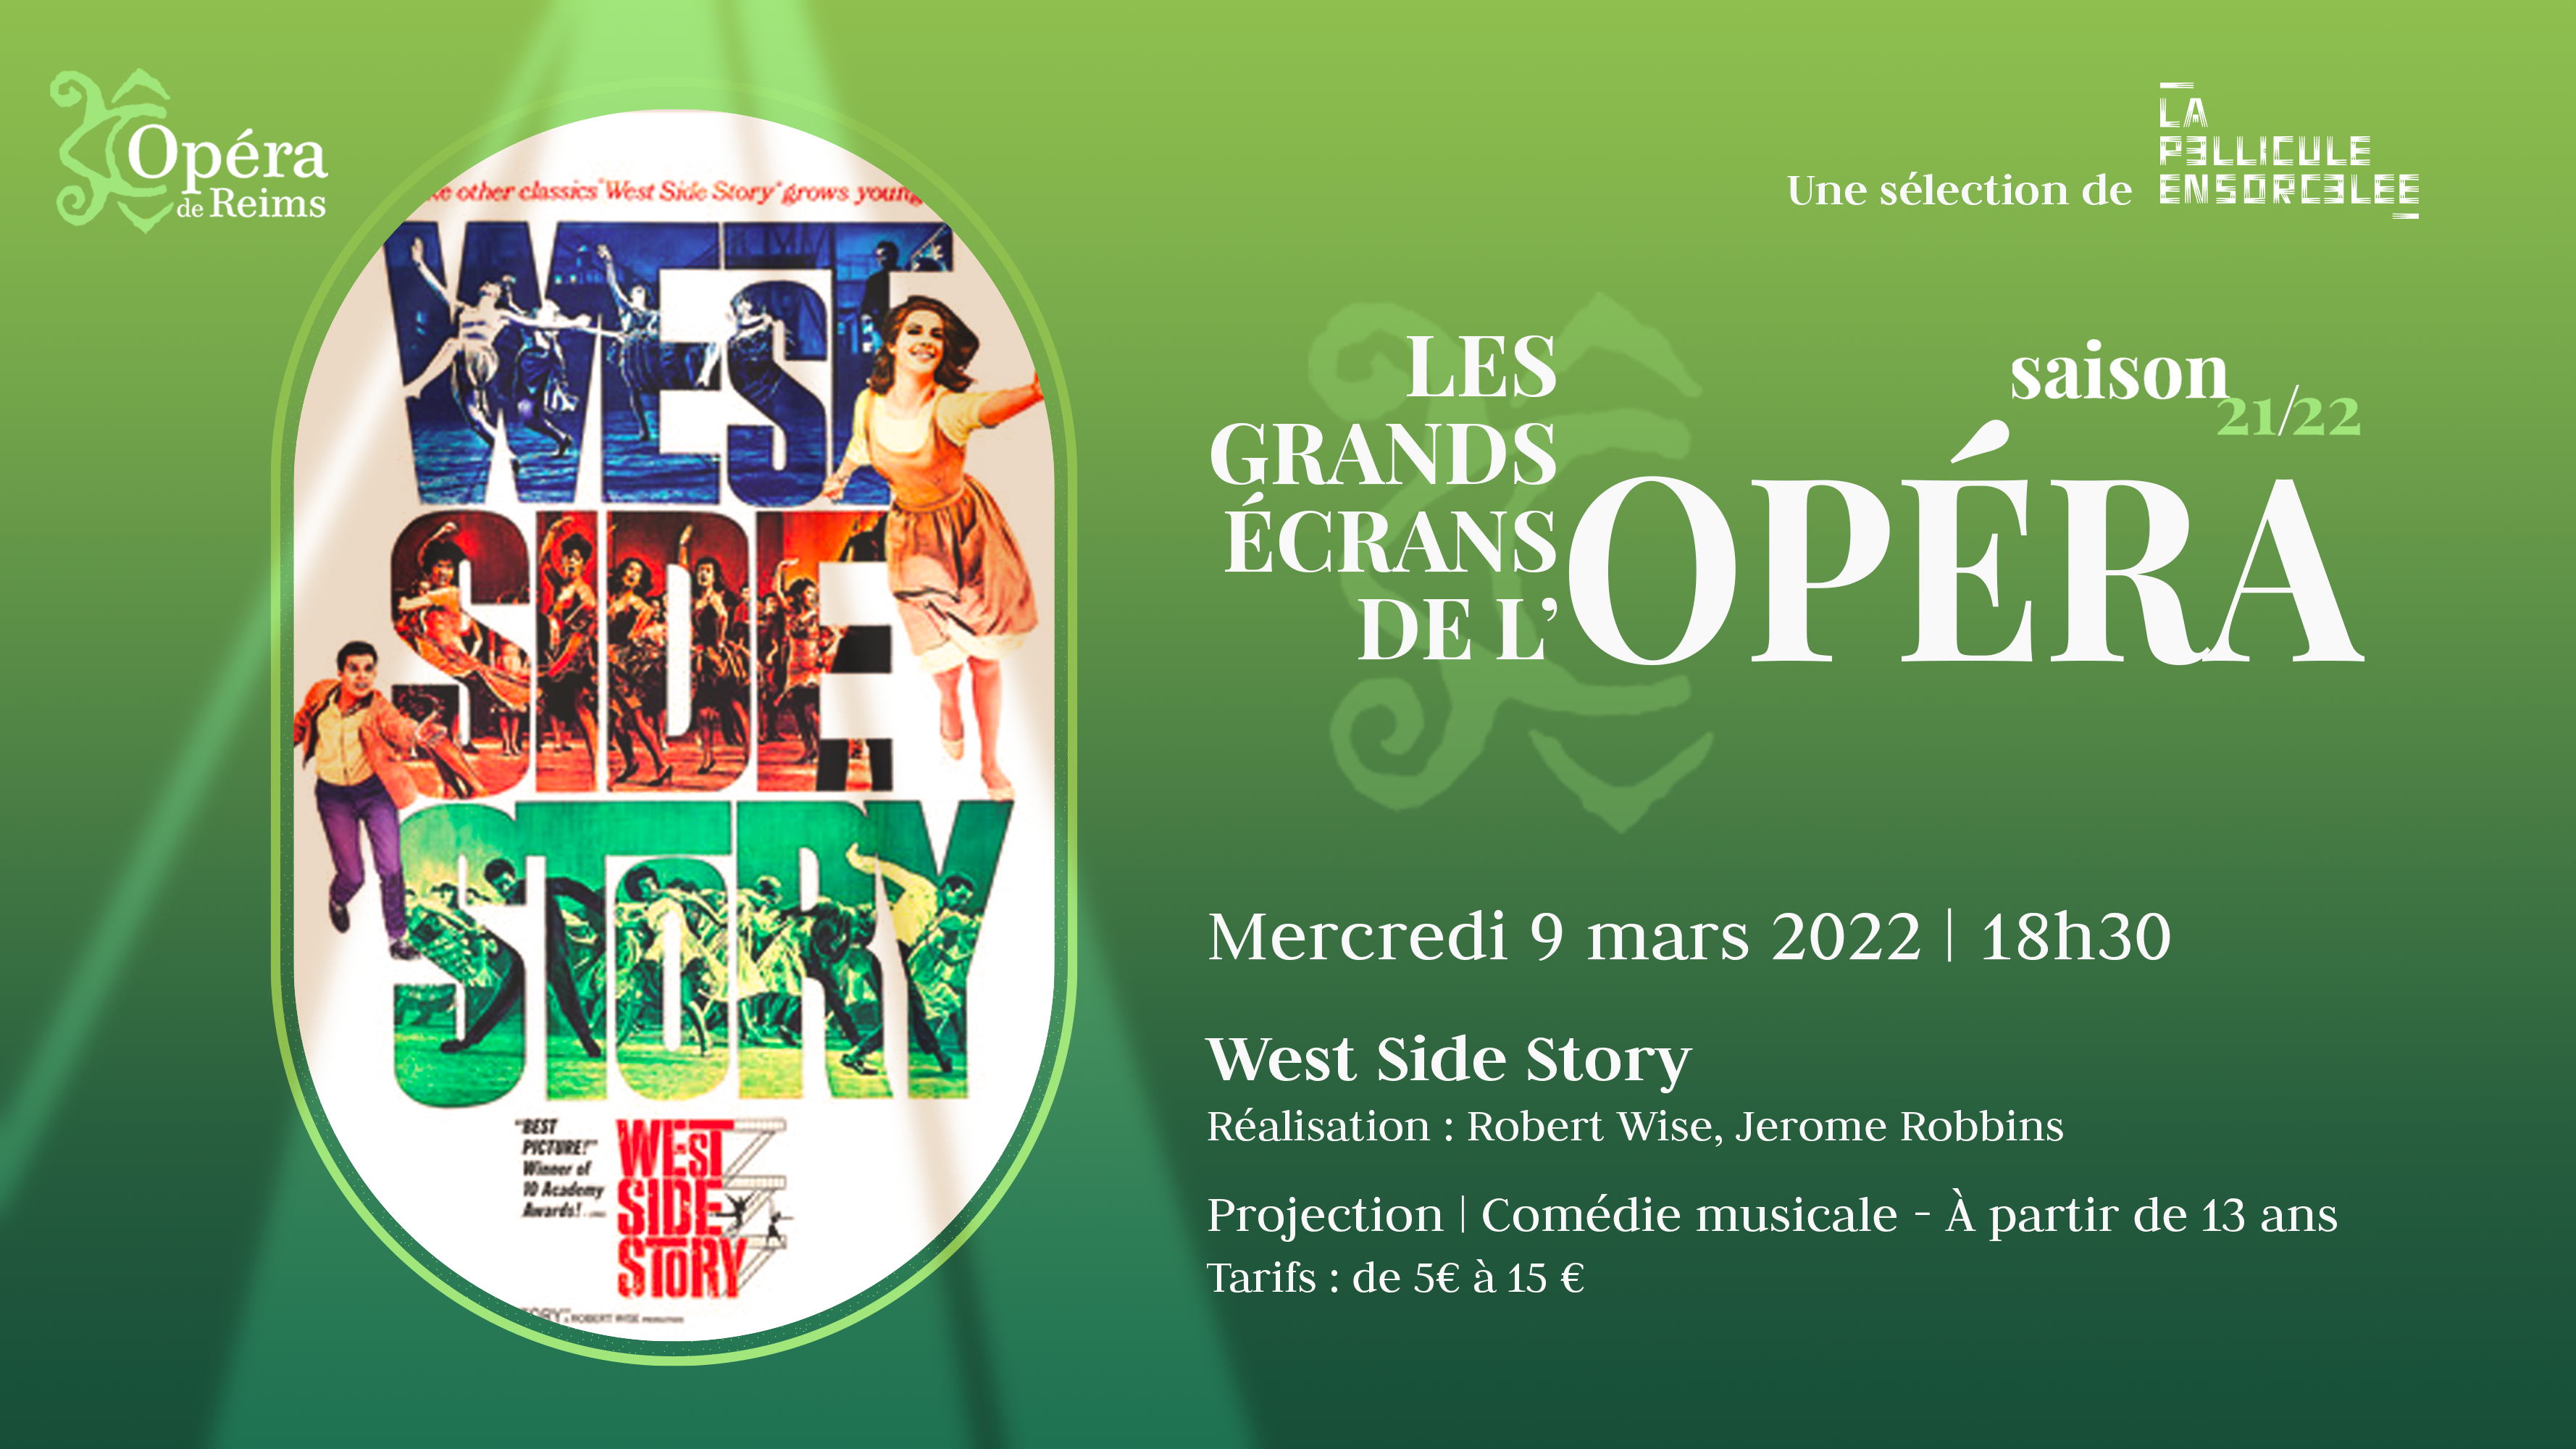 Les Grands Écrans de l’Opéra - West Side Story